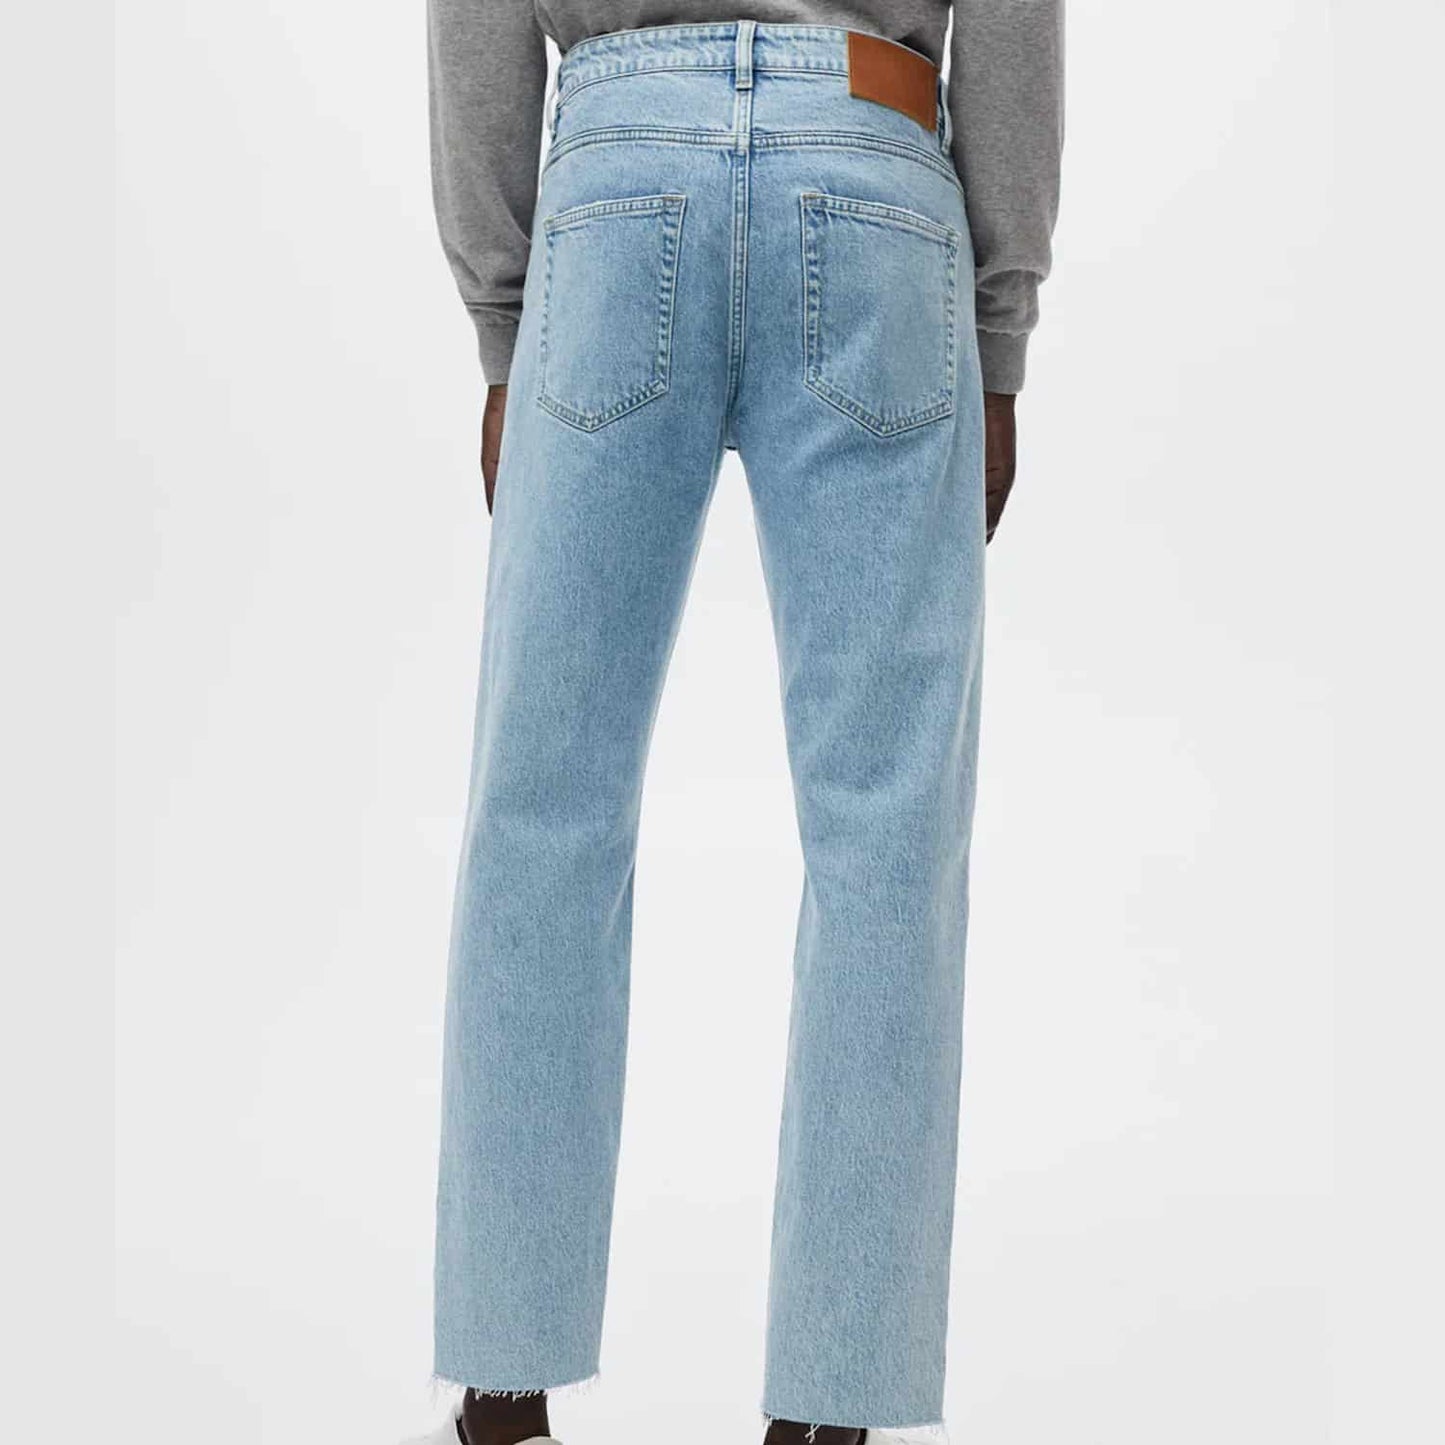 Skinny Jeans for Men Excellent Fit Denim